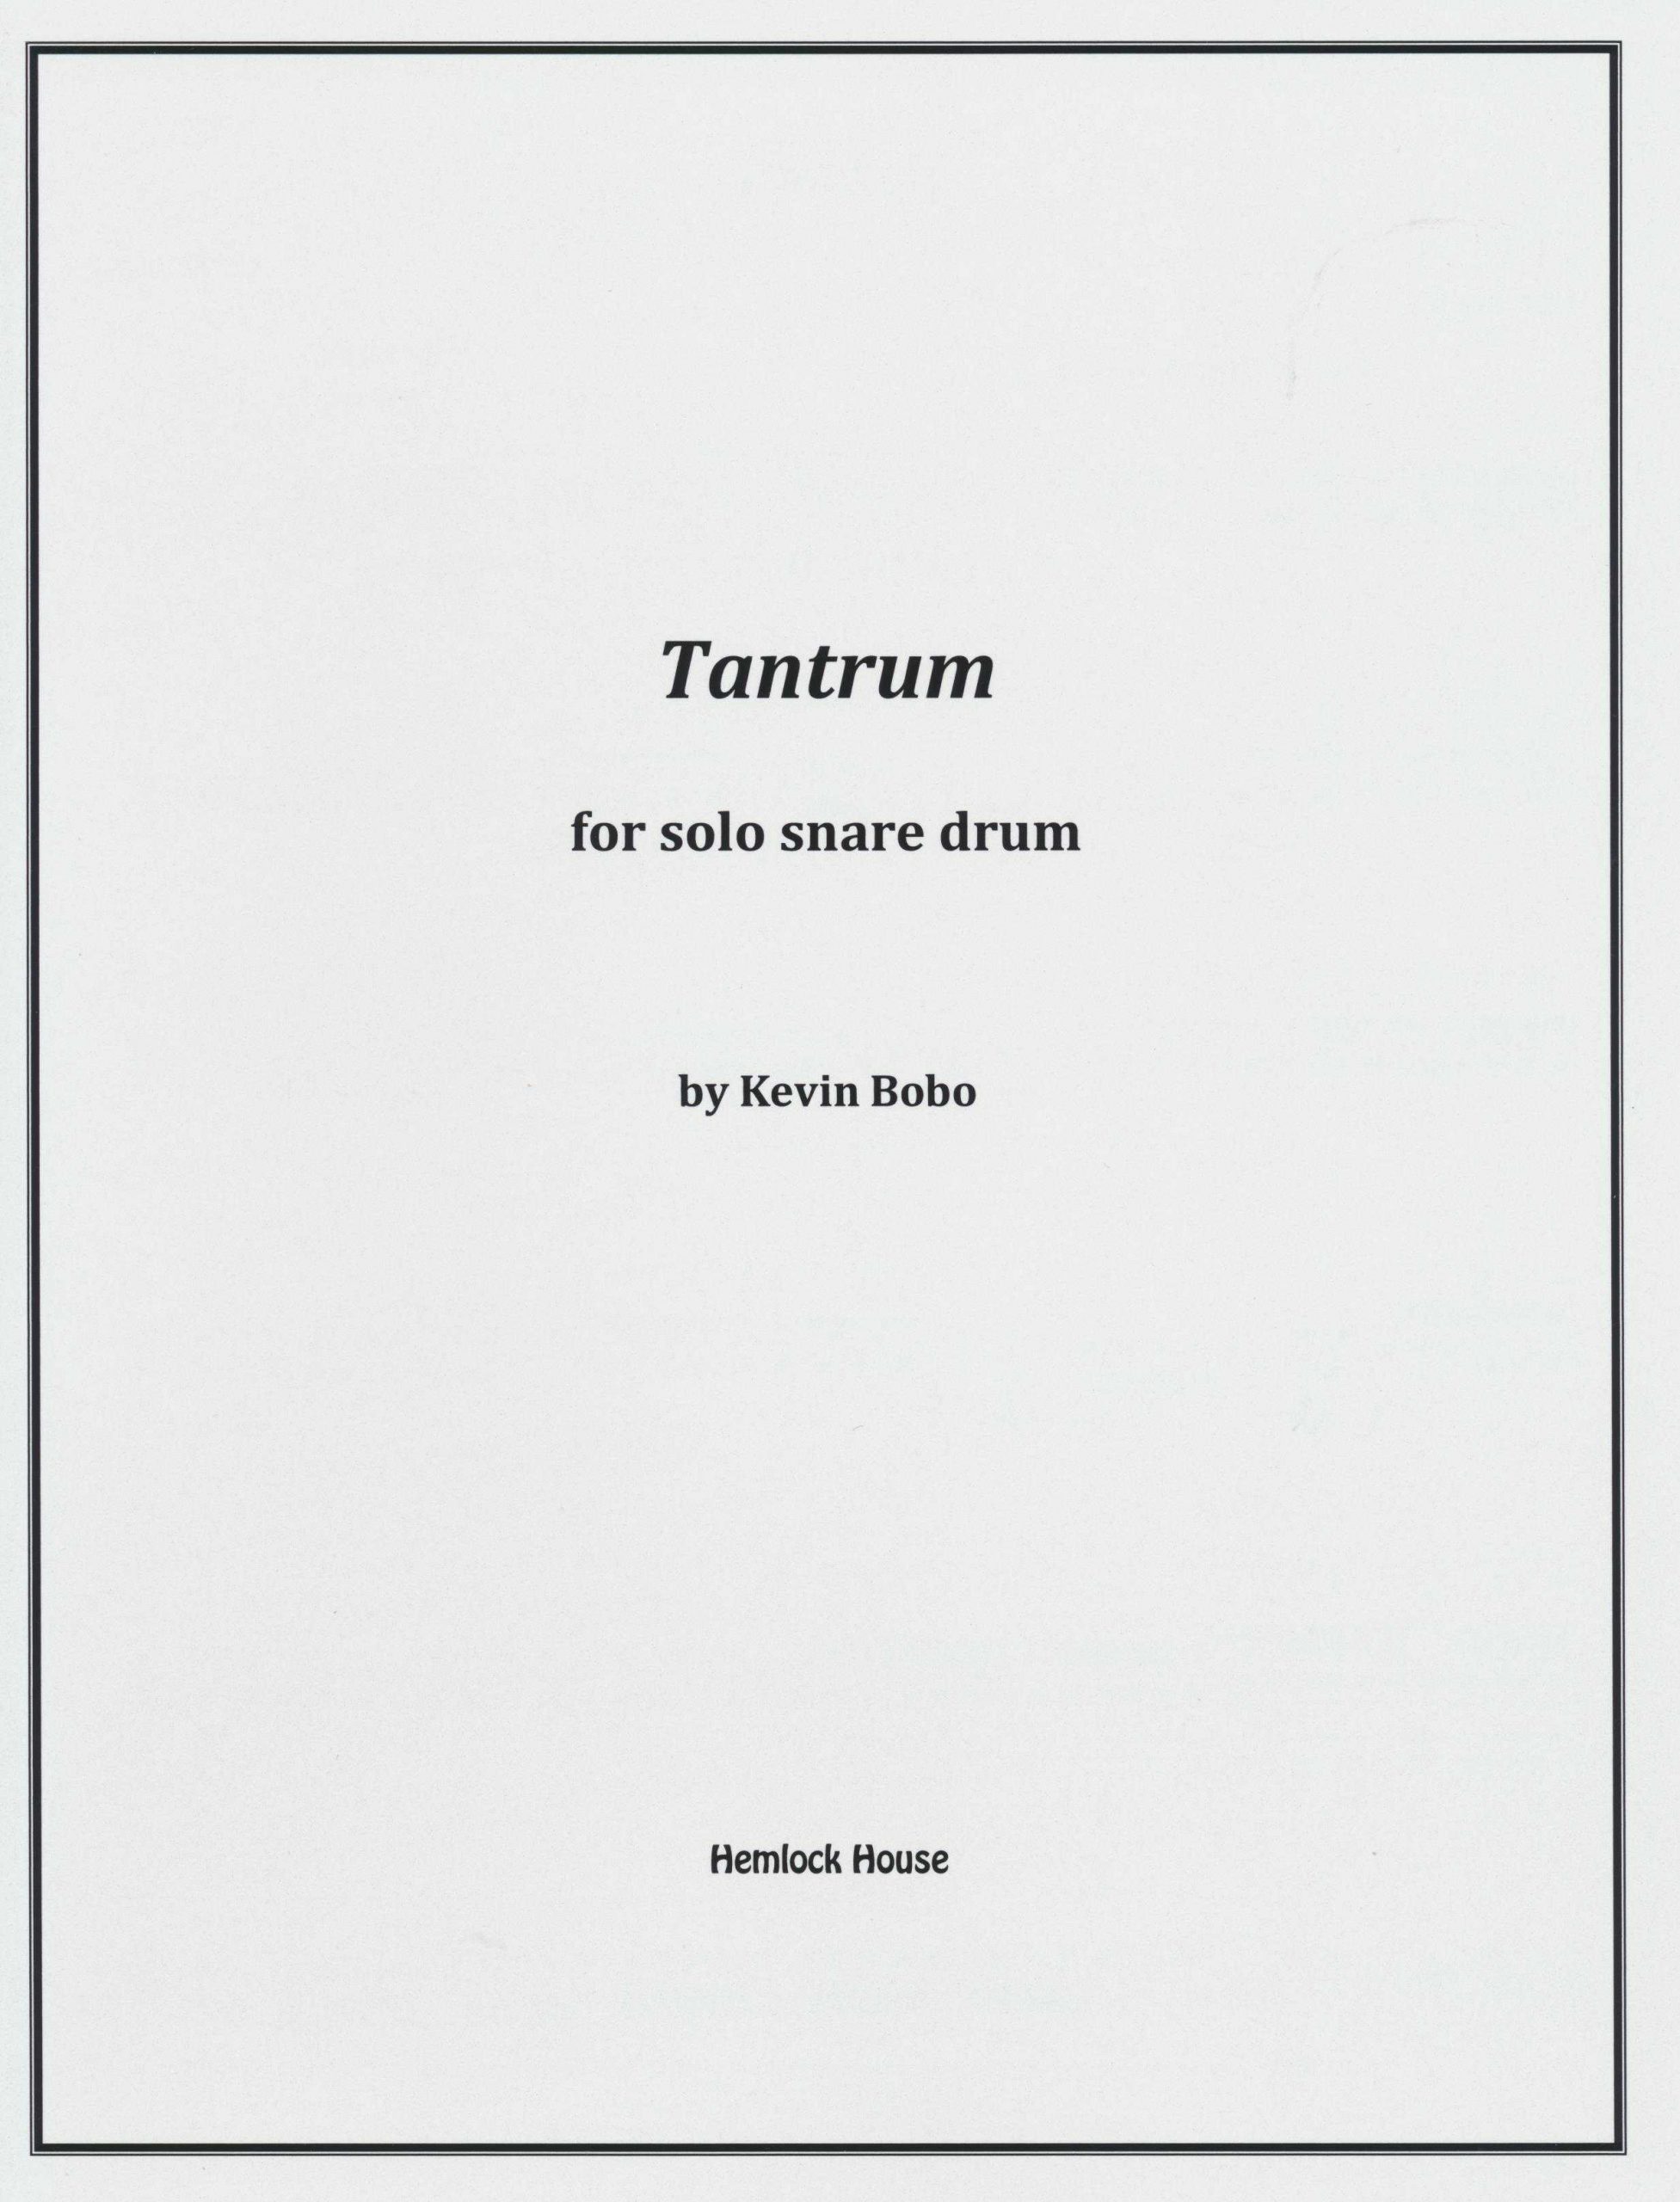 Tantrum by Kevin Bobo